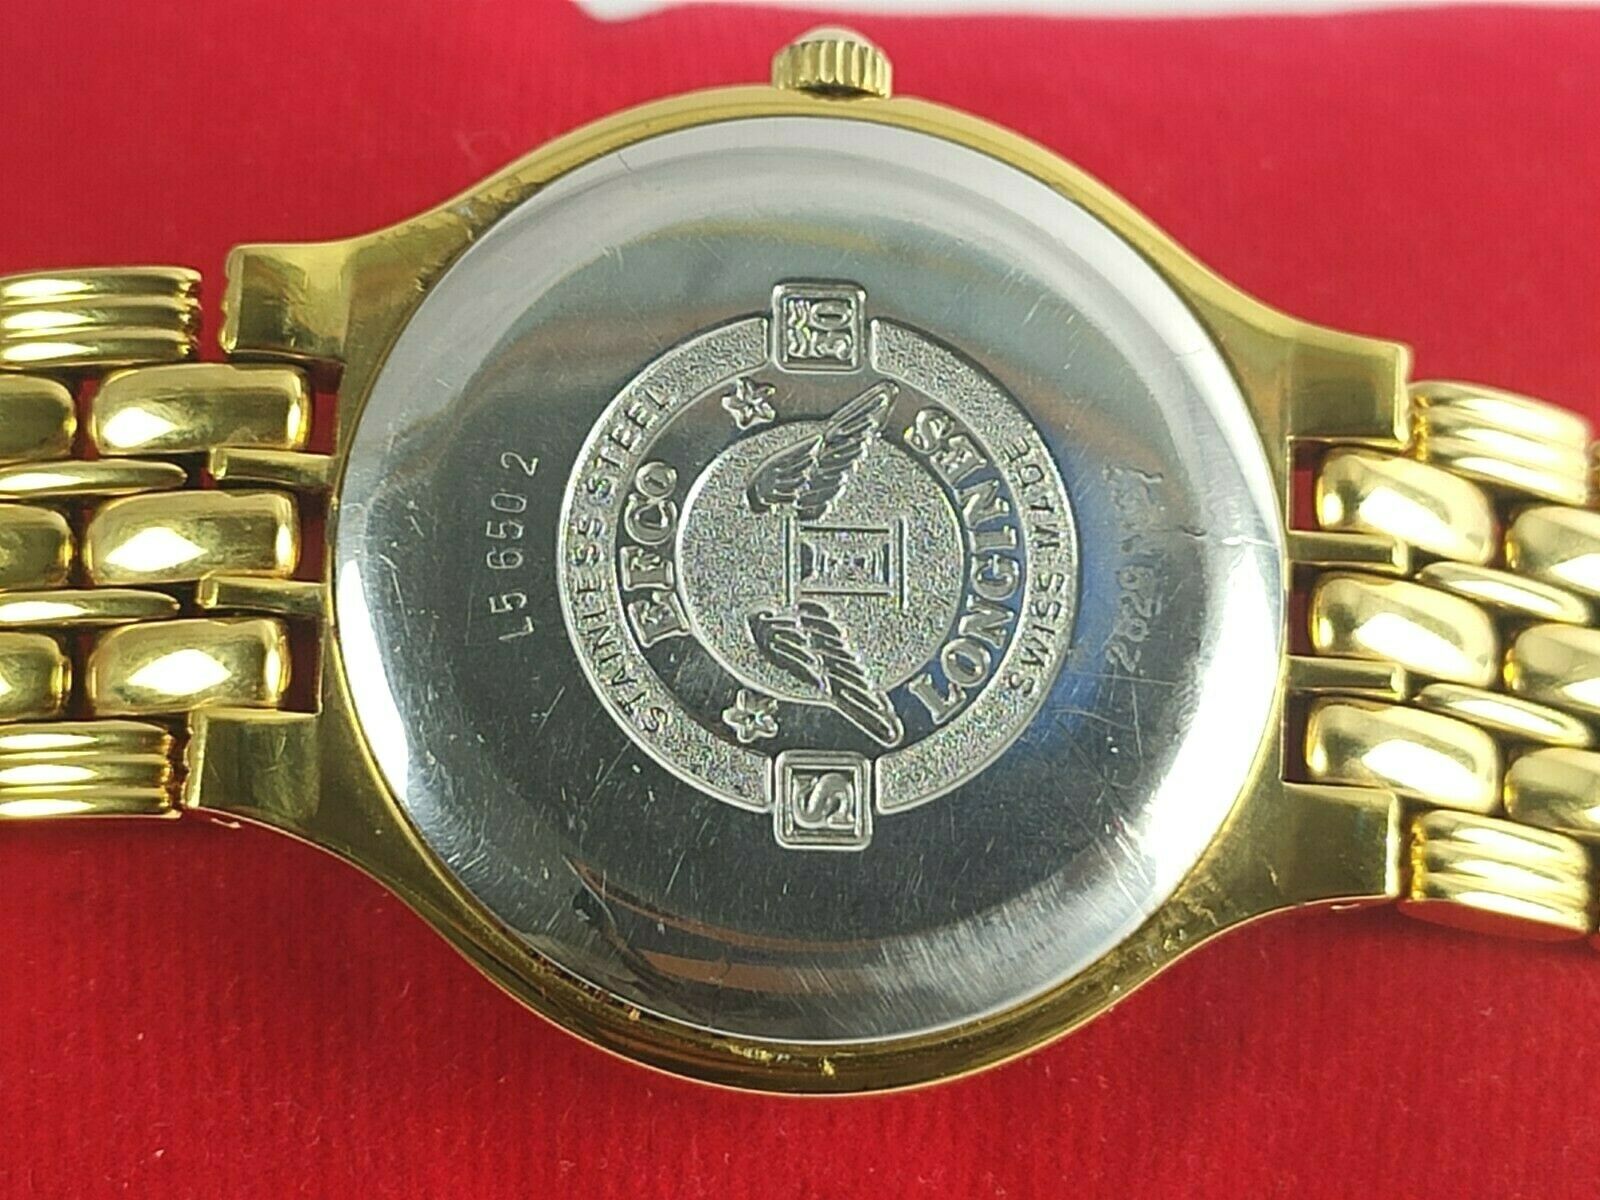 mens westair watch, quartz,,ticking decent used condition | eBay